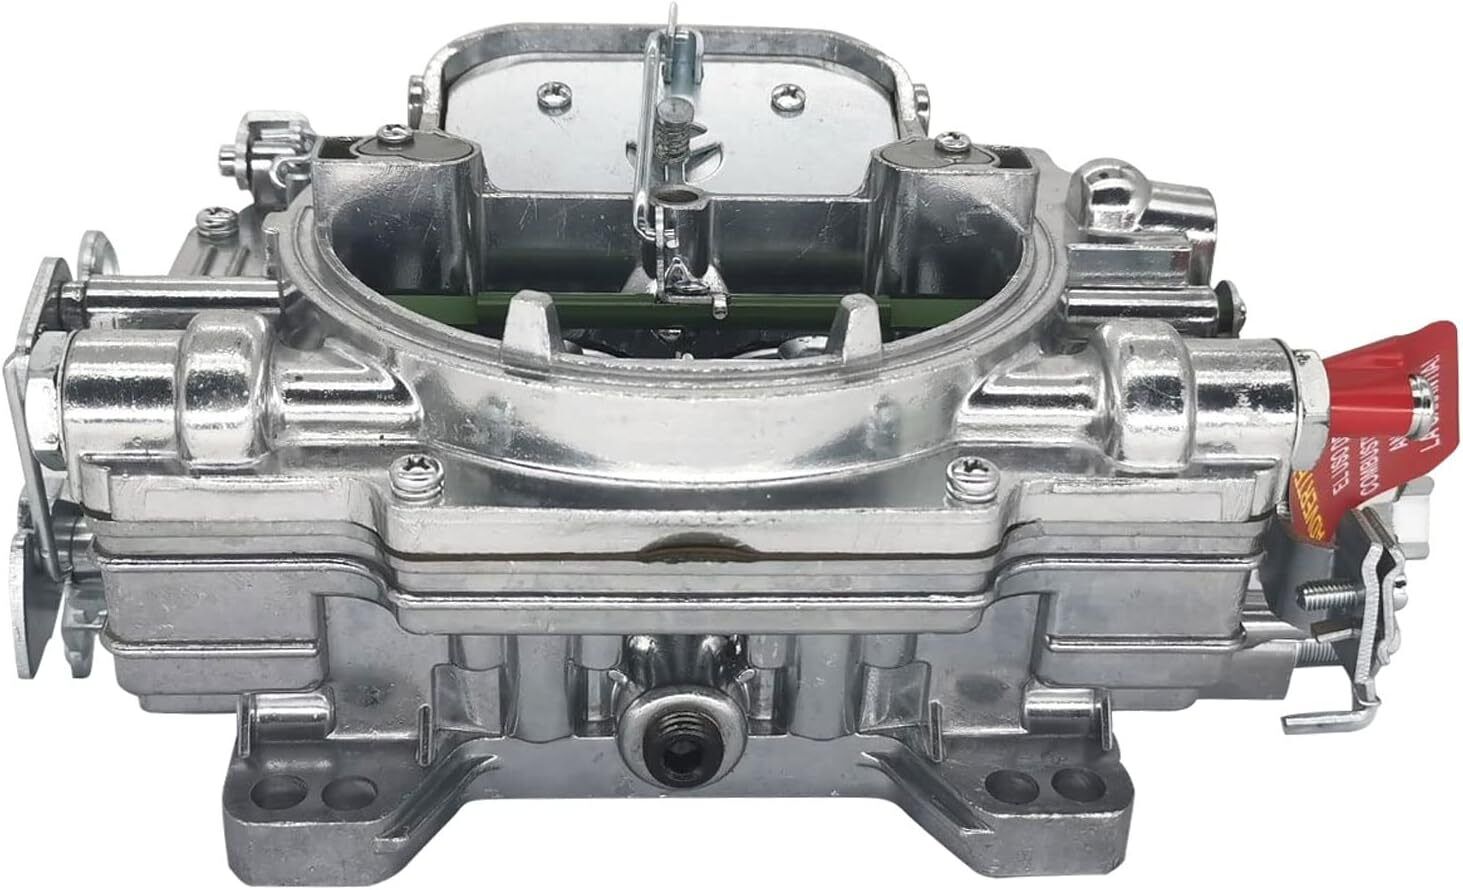 Carburetor replacement For Edelbrock 1405 Performer 600CFM 4 Barrel Manual Choke